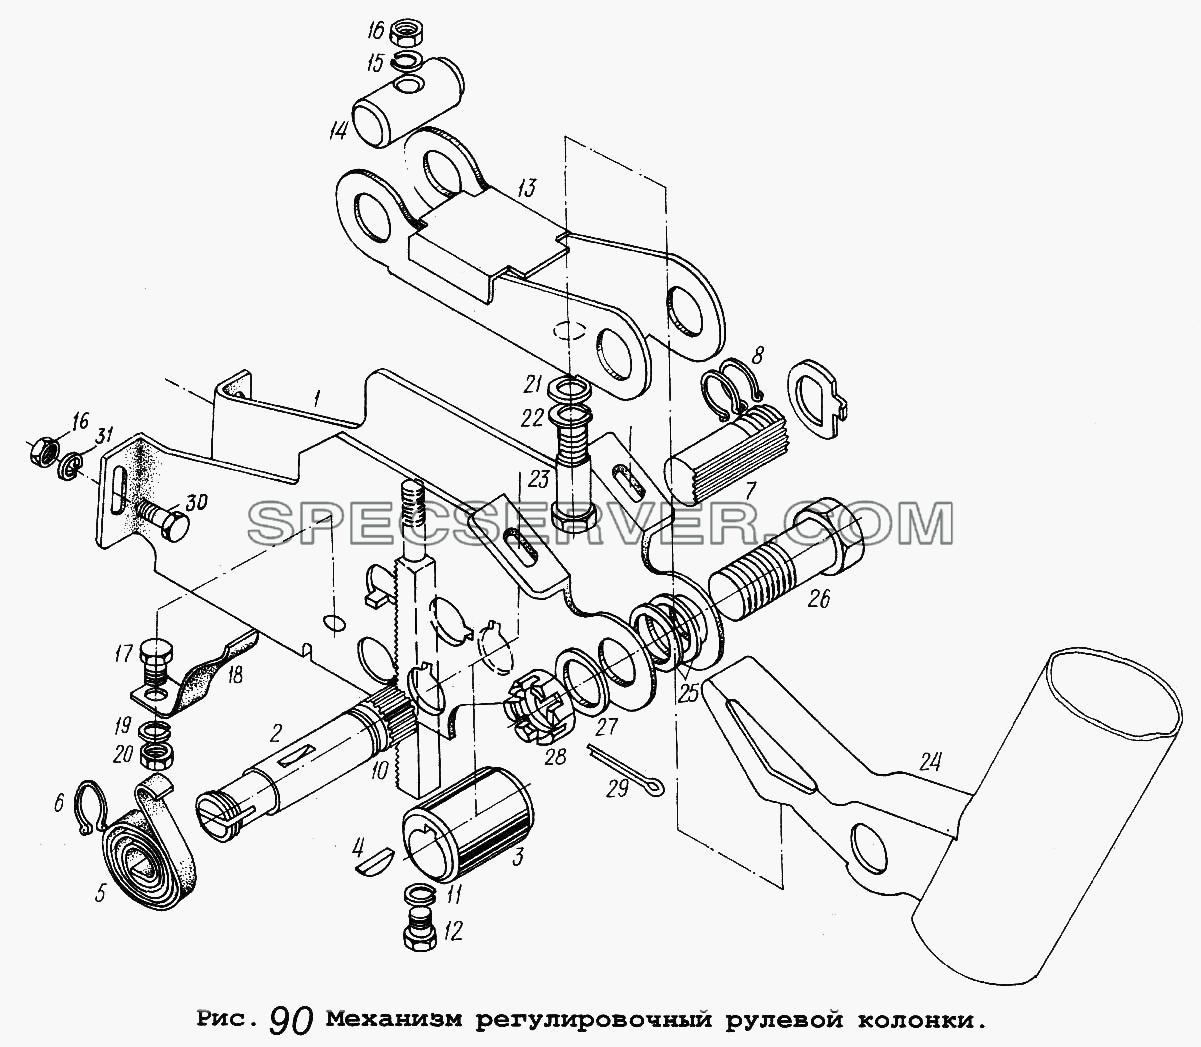 Механизм регулировочный рулевой колонки для МАЗ-5337 (список запасных частей)